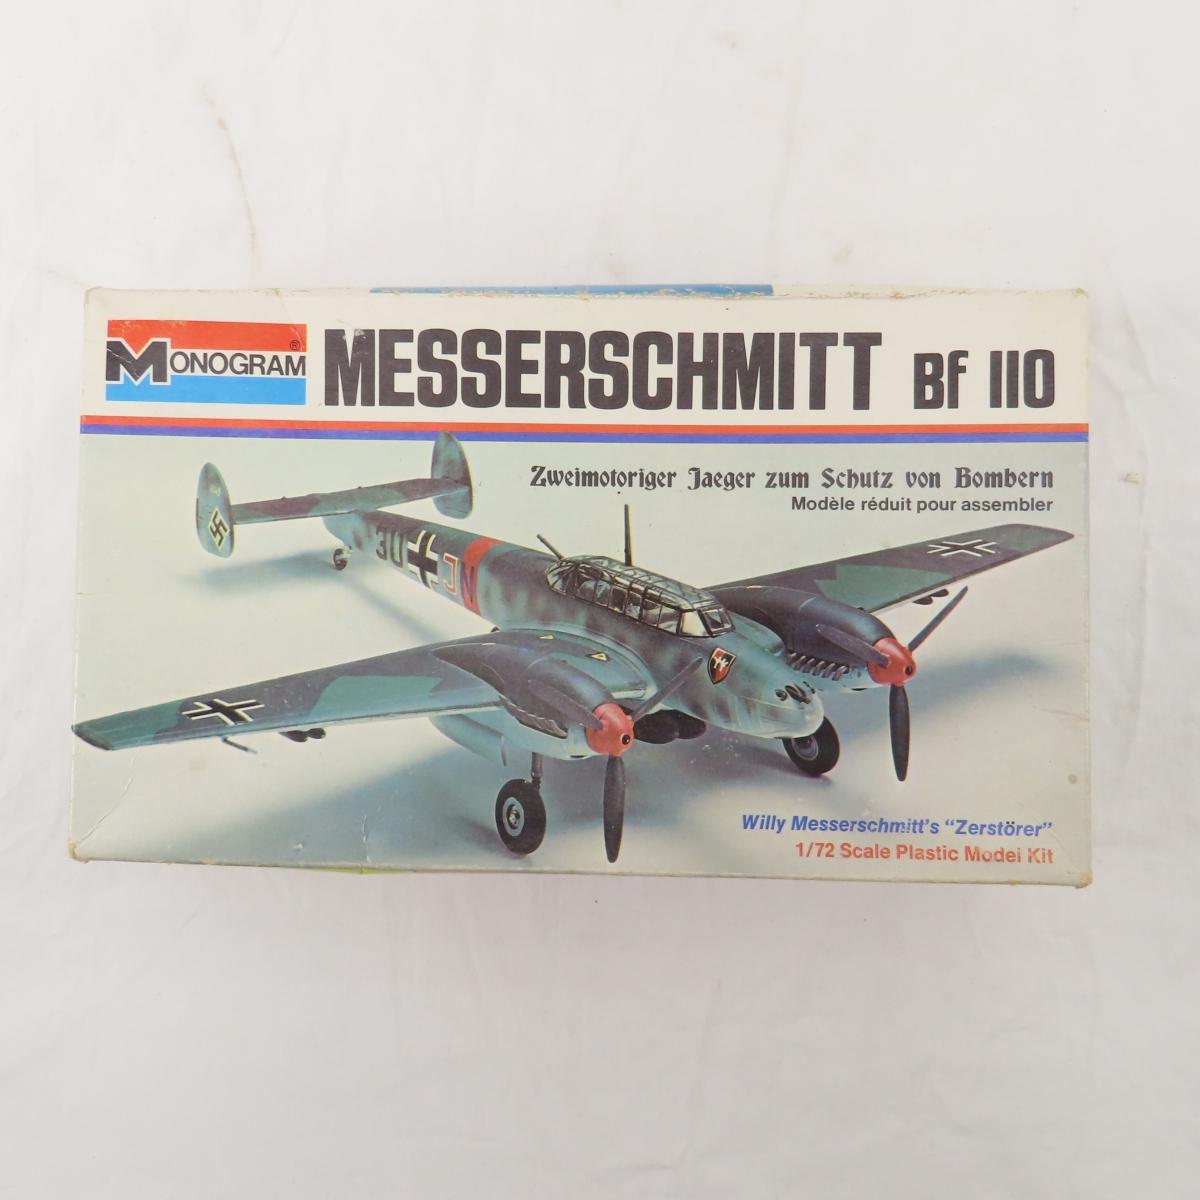 Chevy Van and Messerschmitt Plane models